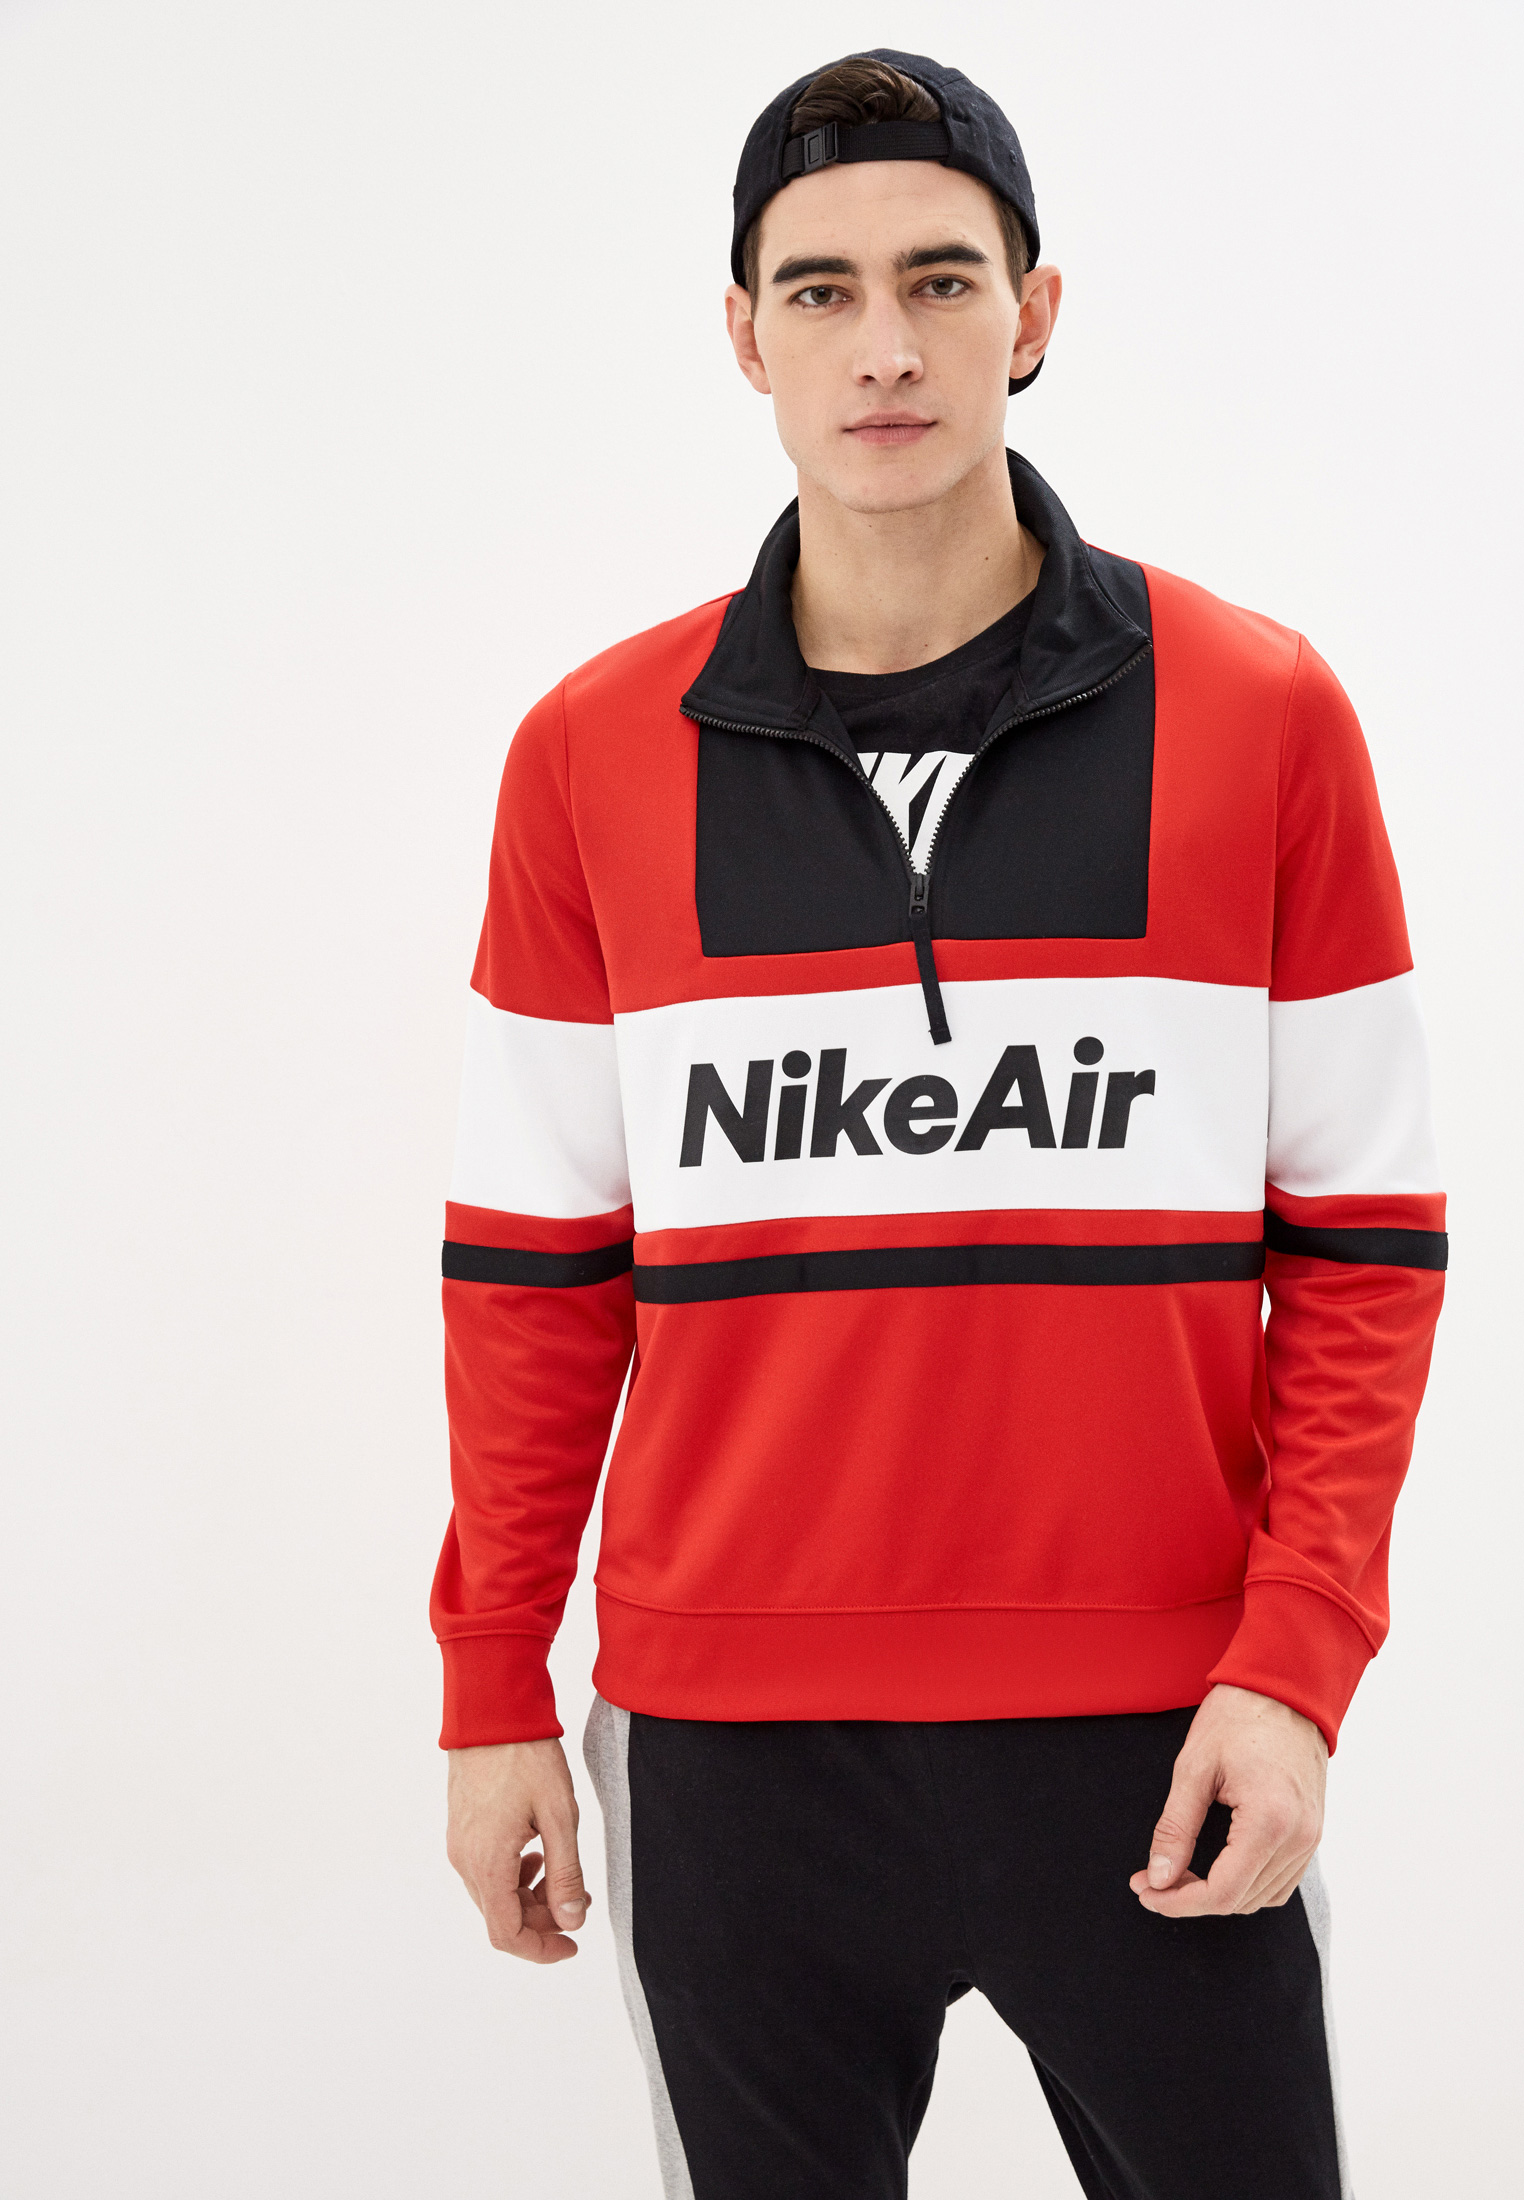 Олимпийка Nike M NSW NIKE AIR JKT PK, цвет: красный, NI464EMHUCF9 — купить  в интернет-магазине Lamoda